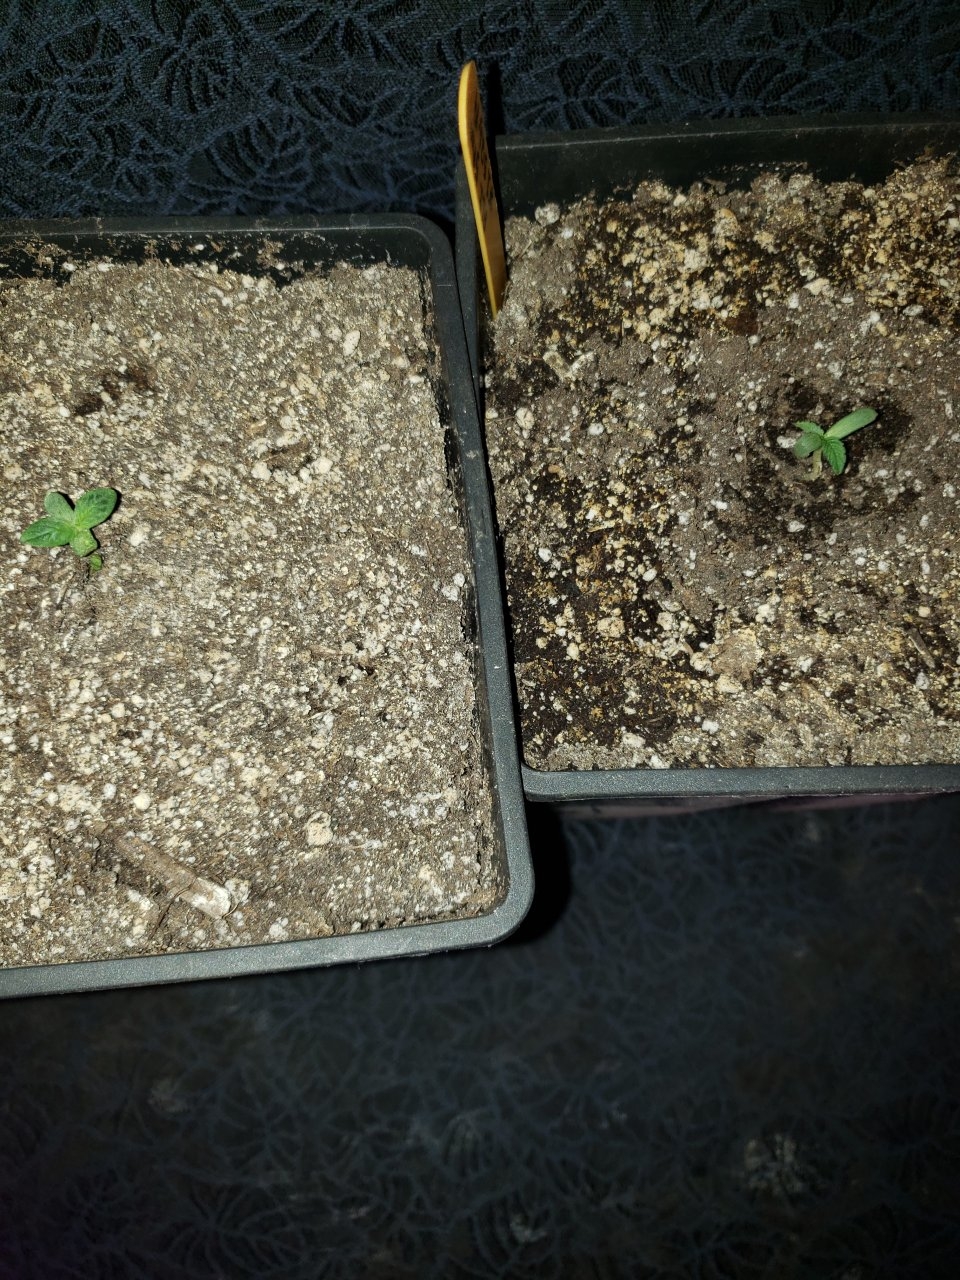 Both HB R.L.T seedlings